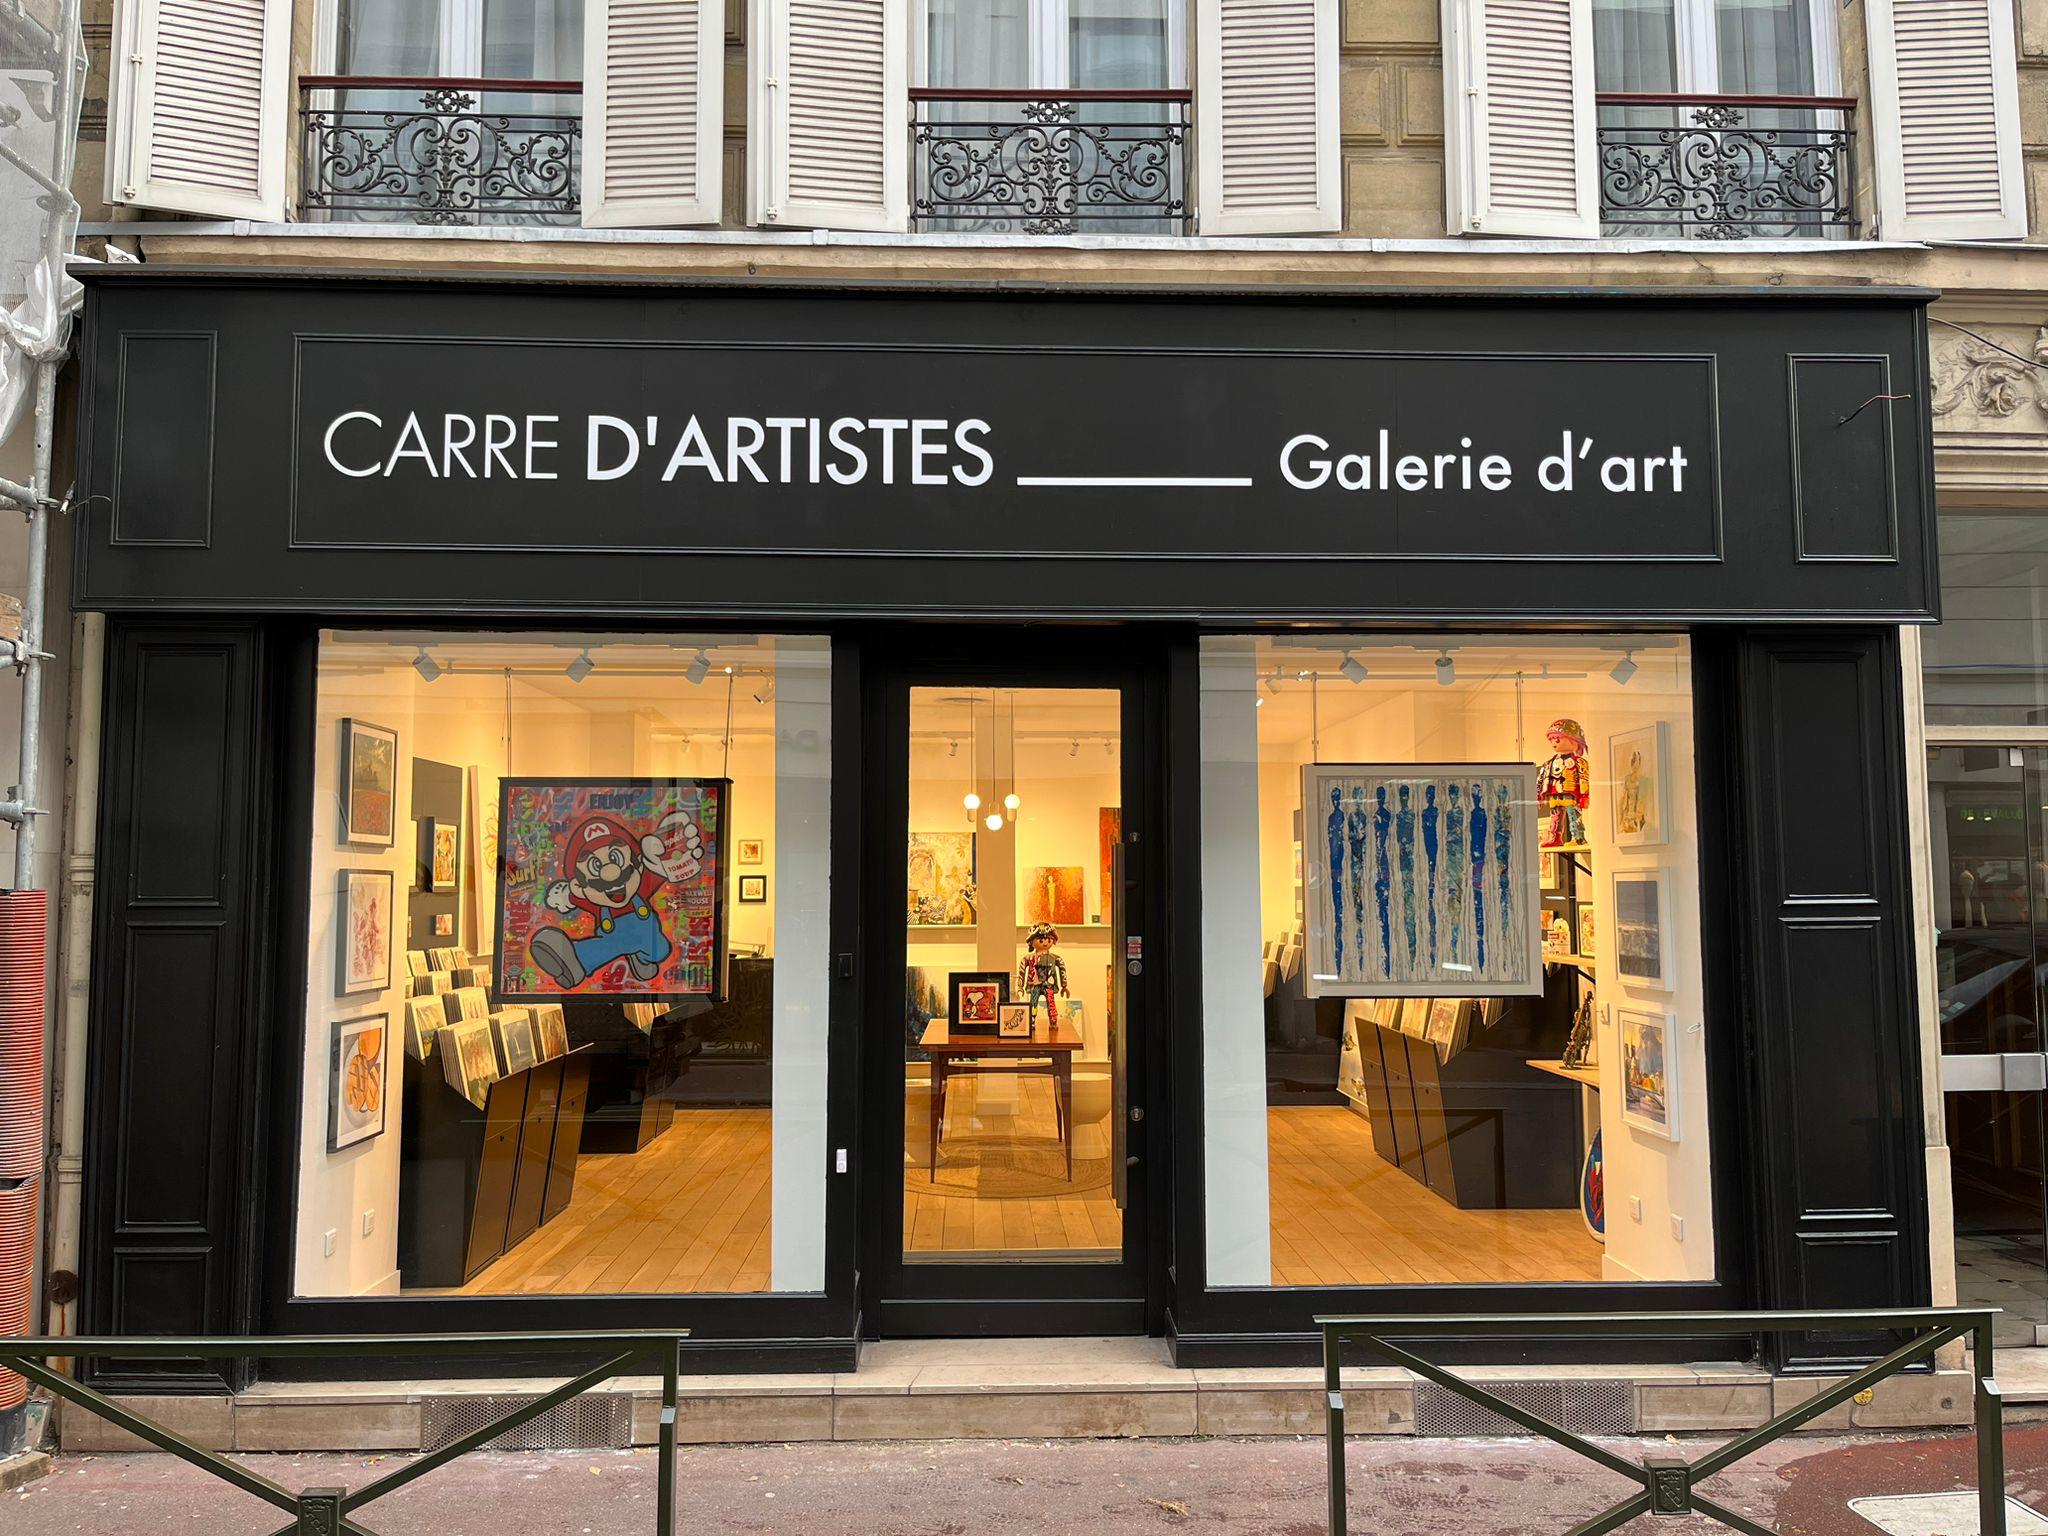 Images Galerie d'art Carré d'artistes